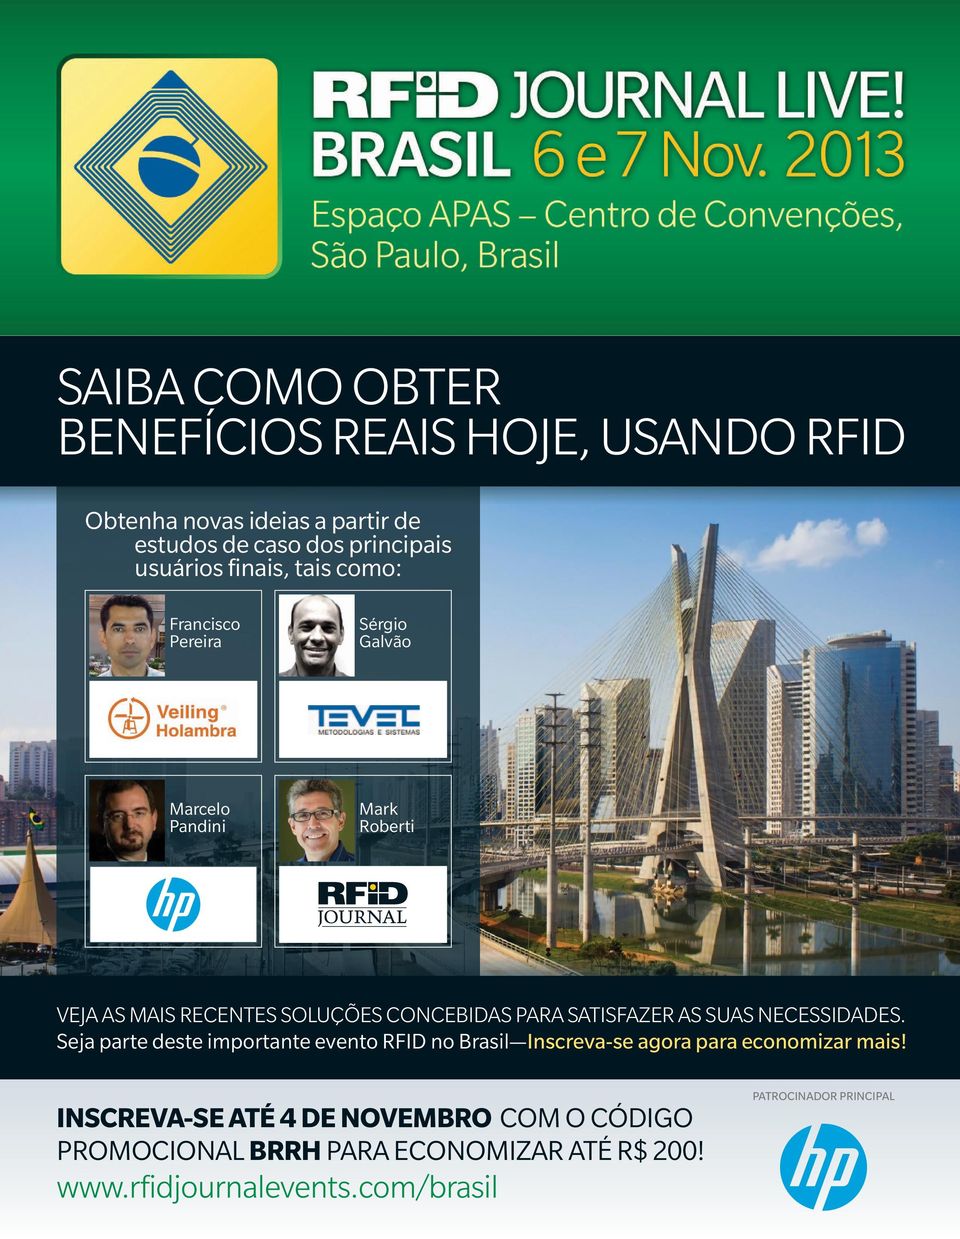 SATISFAZER AS SUAS NECESSIDADES. Seja parte deste importante evento RFID no Brasil Inscreva-se agora para economizar mais!